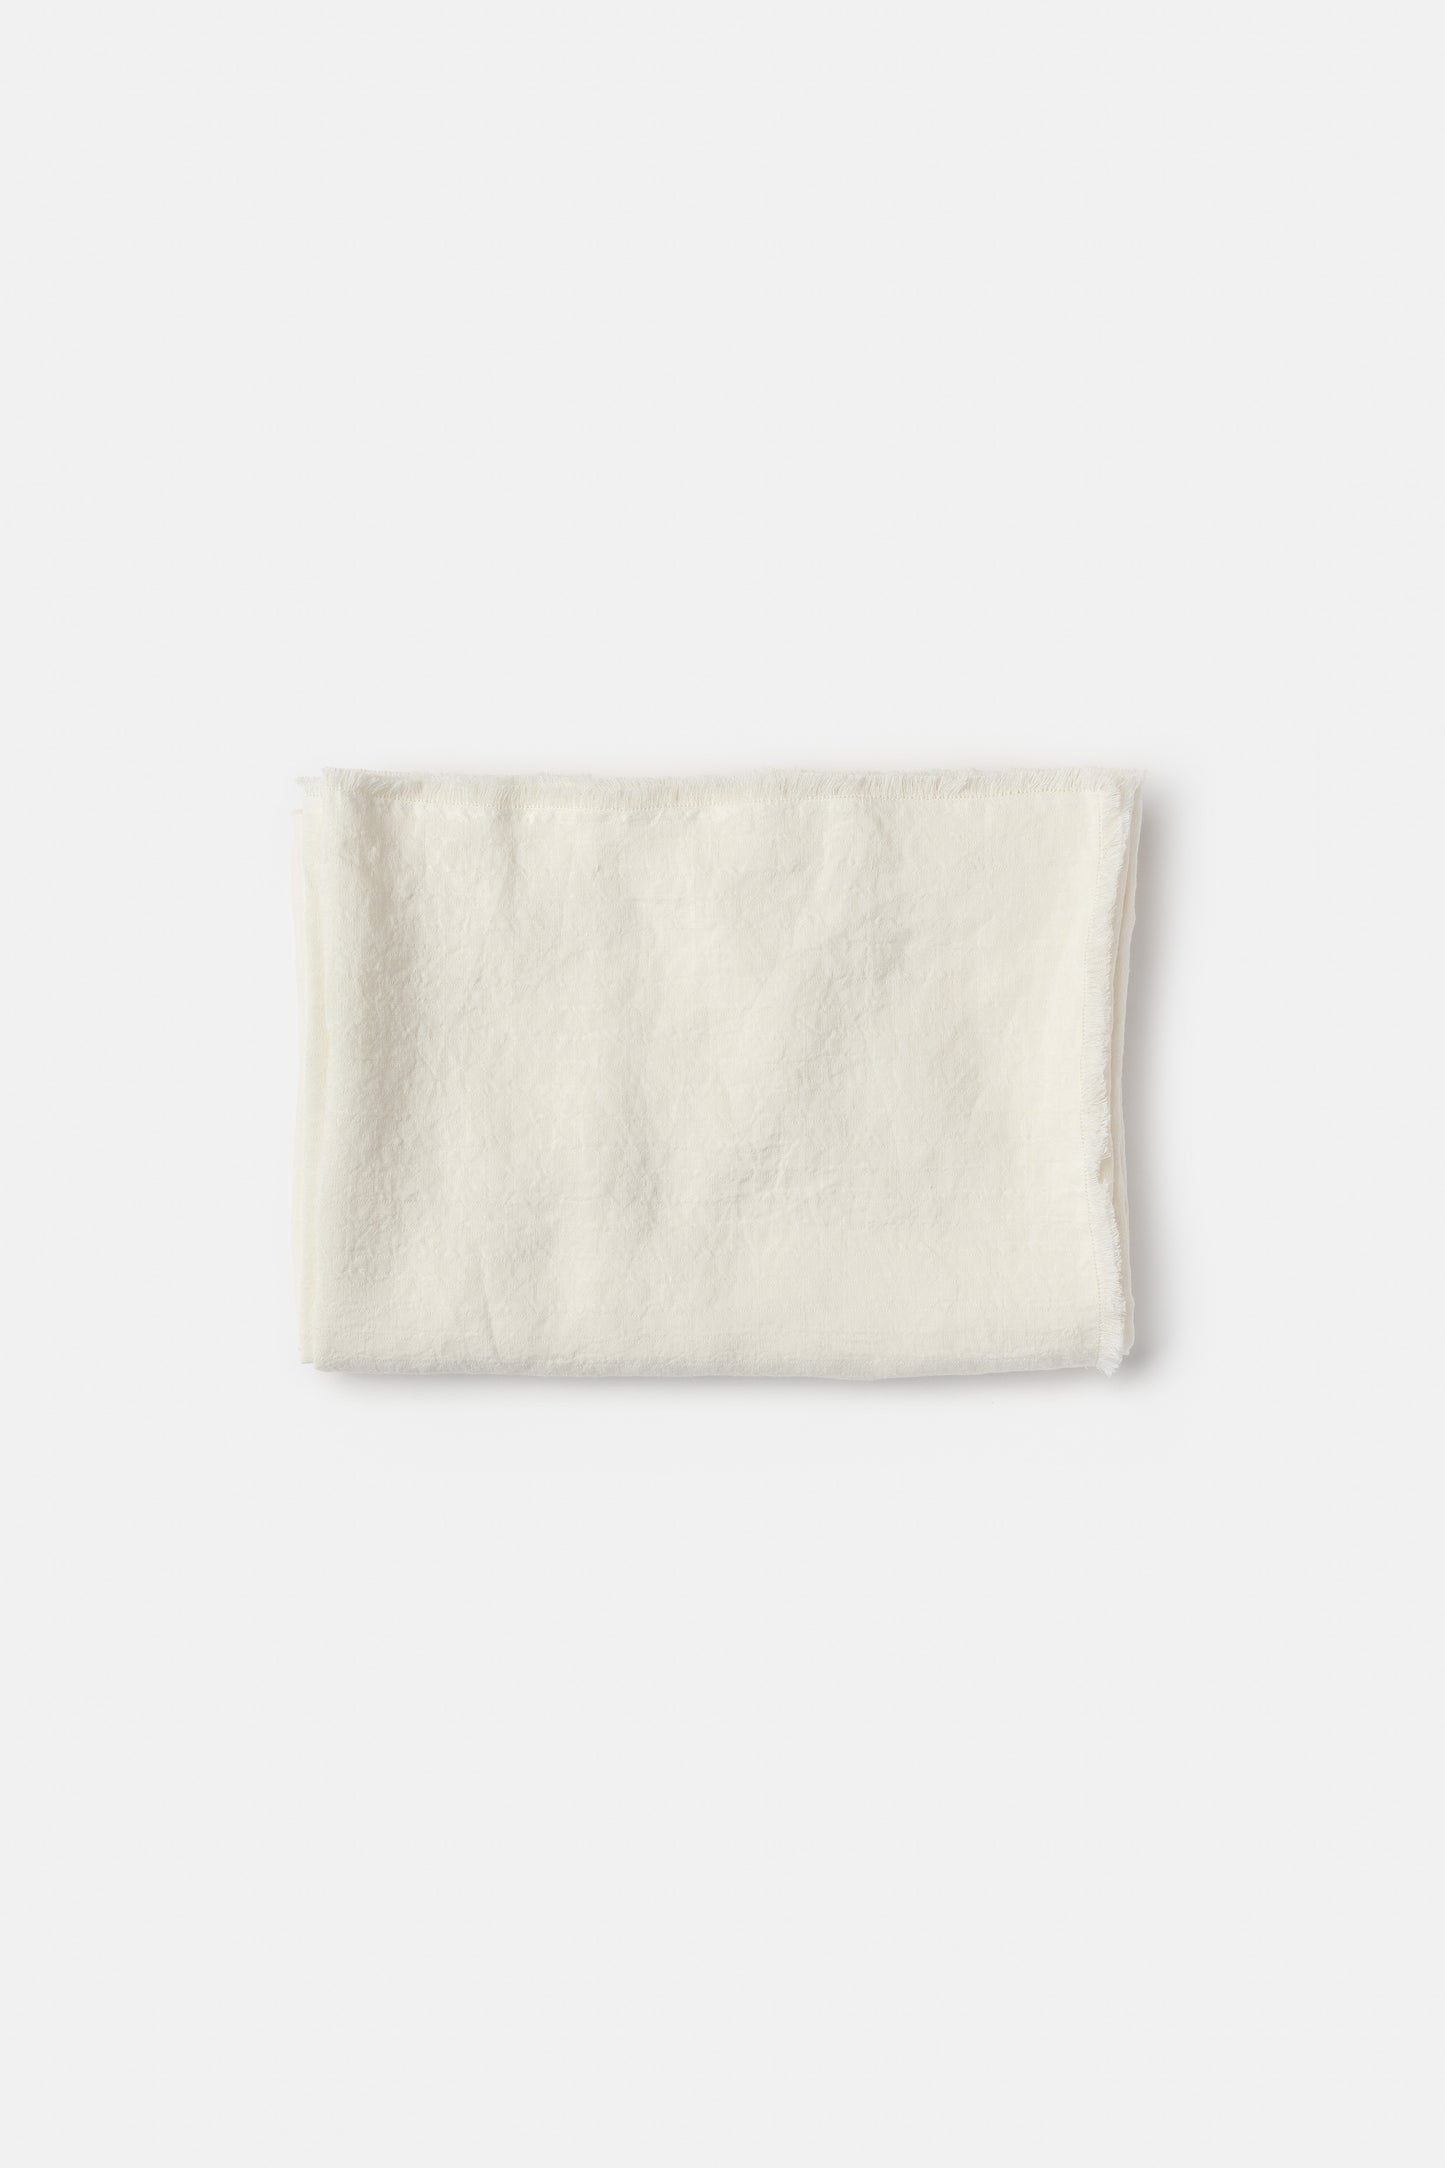 "Galia" tablecloth in White 1/4